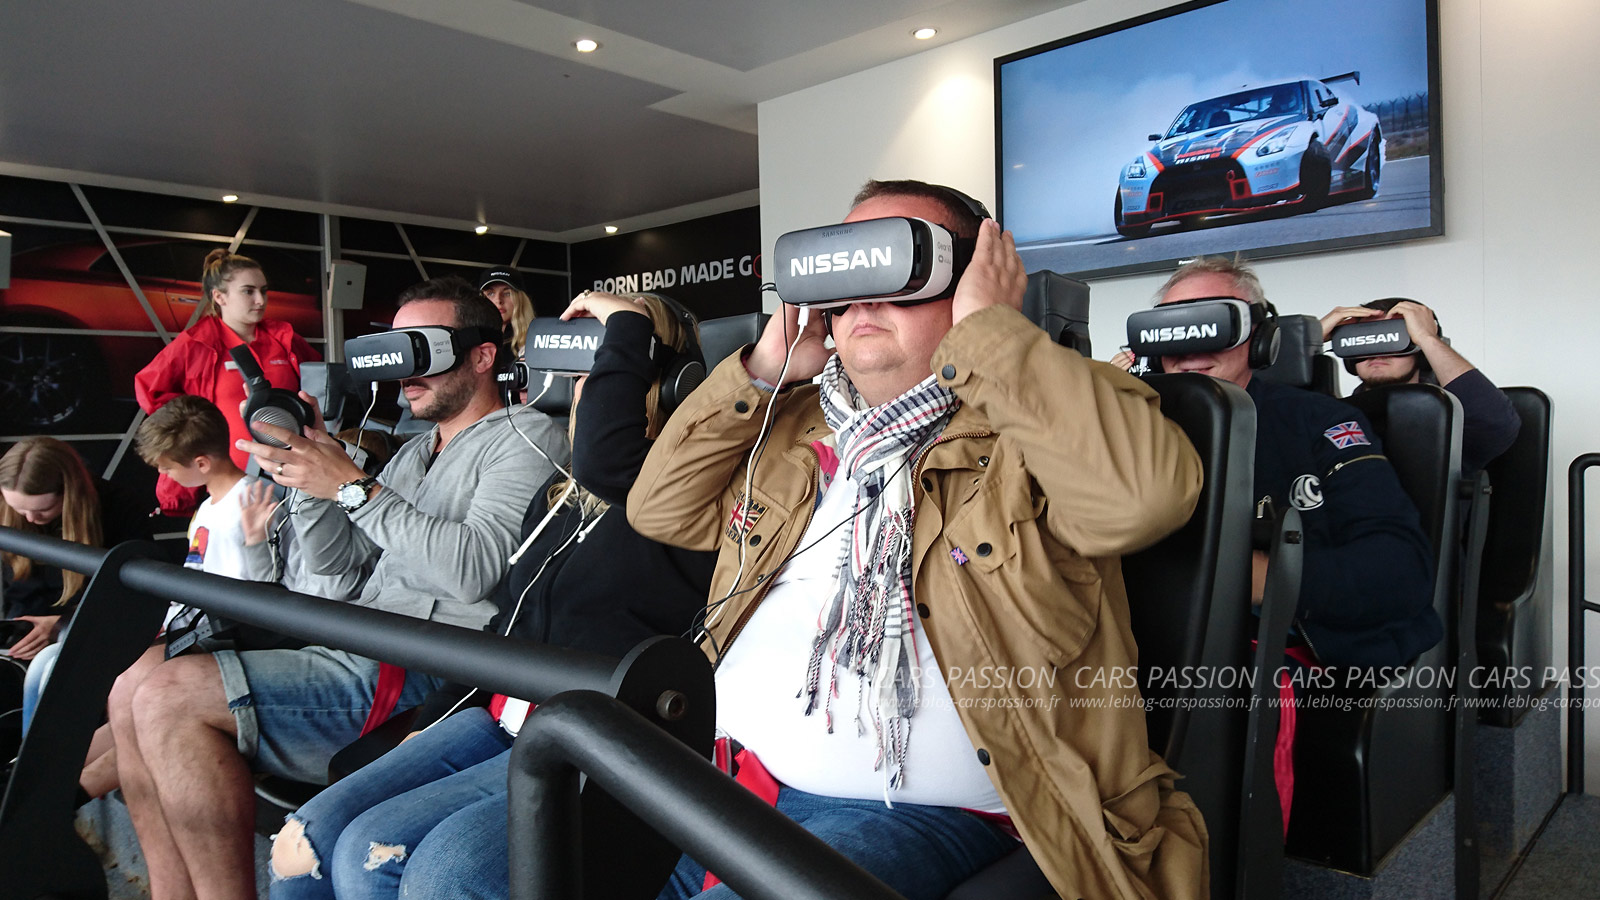 Goodwood-FOS-nissan-realite-virtuelle-casque-oculus-rift